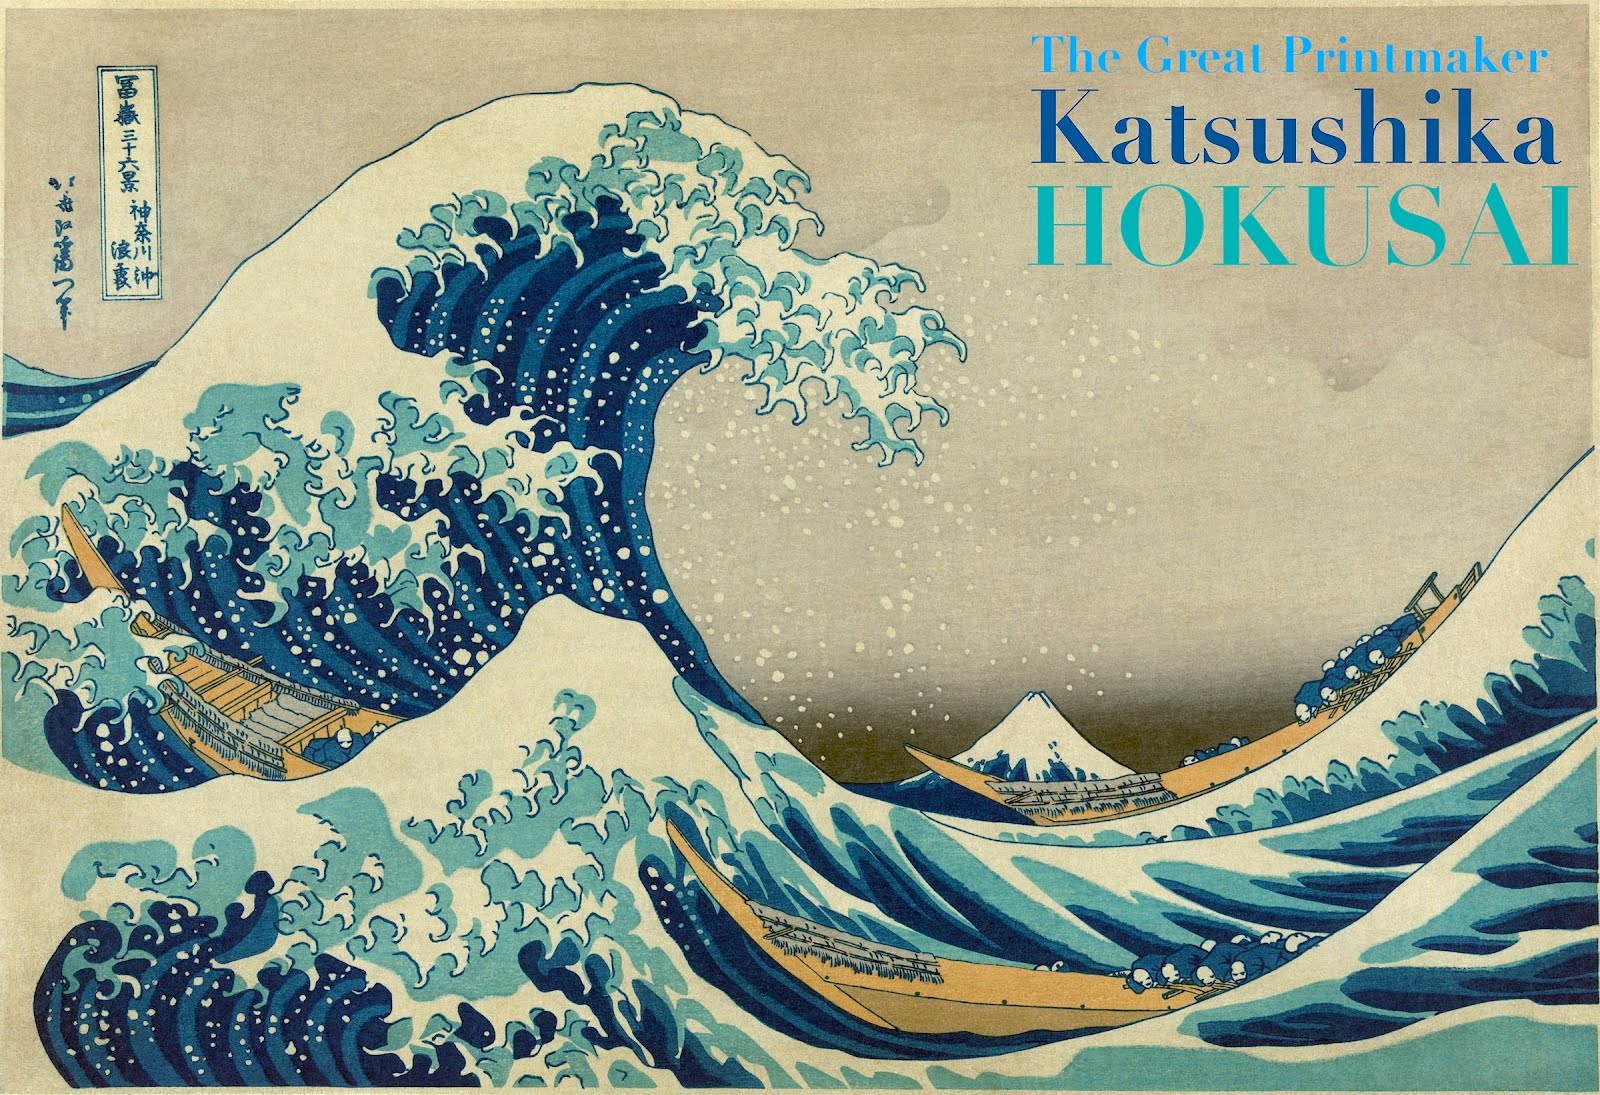 KATSUSHIKA HOKUSAI: Legendary Print Maker + Painter